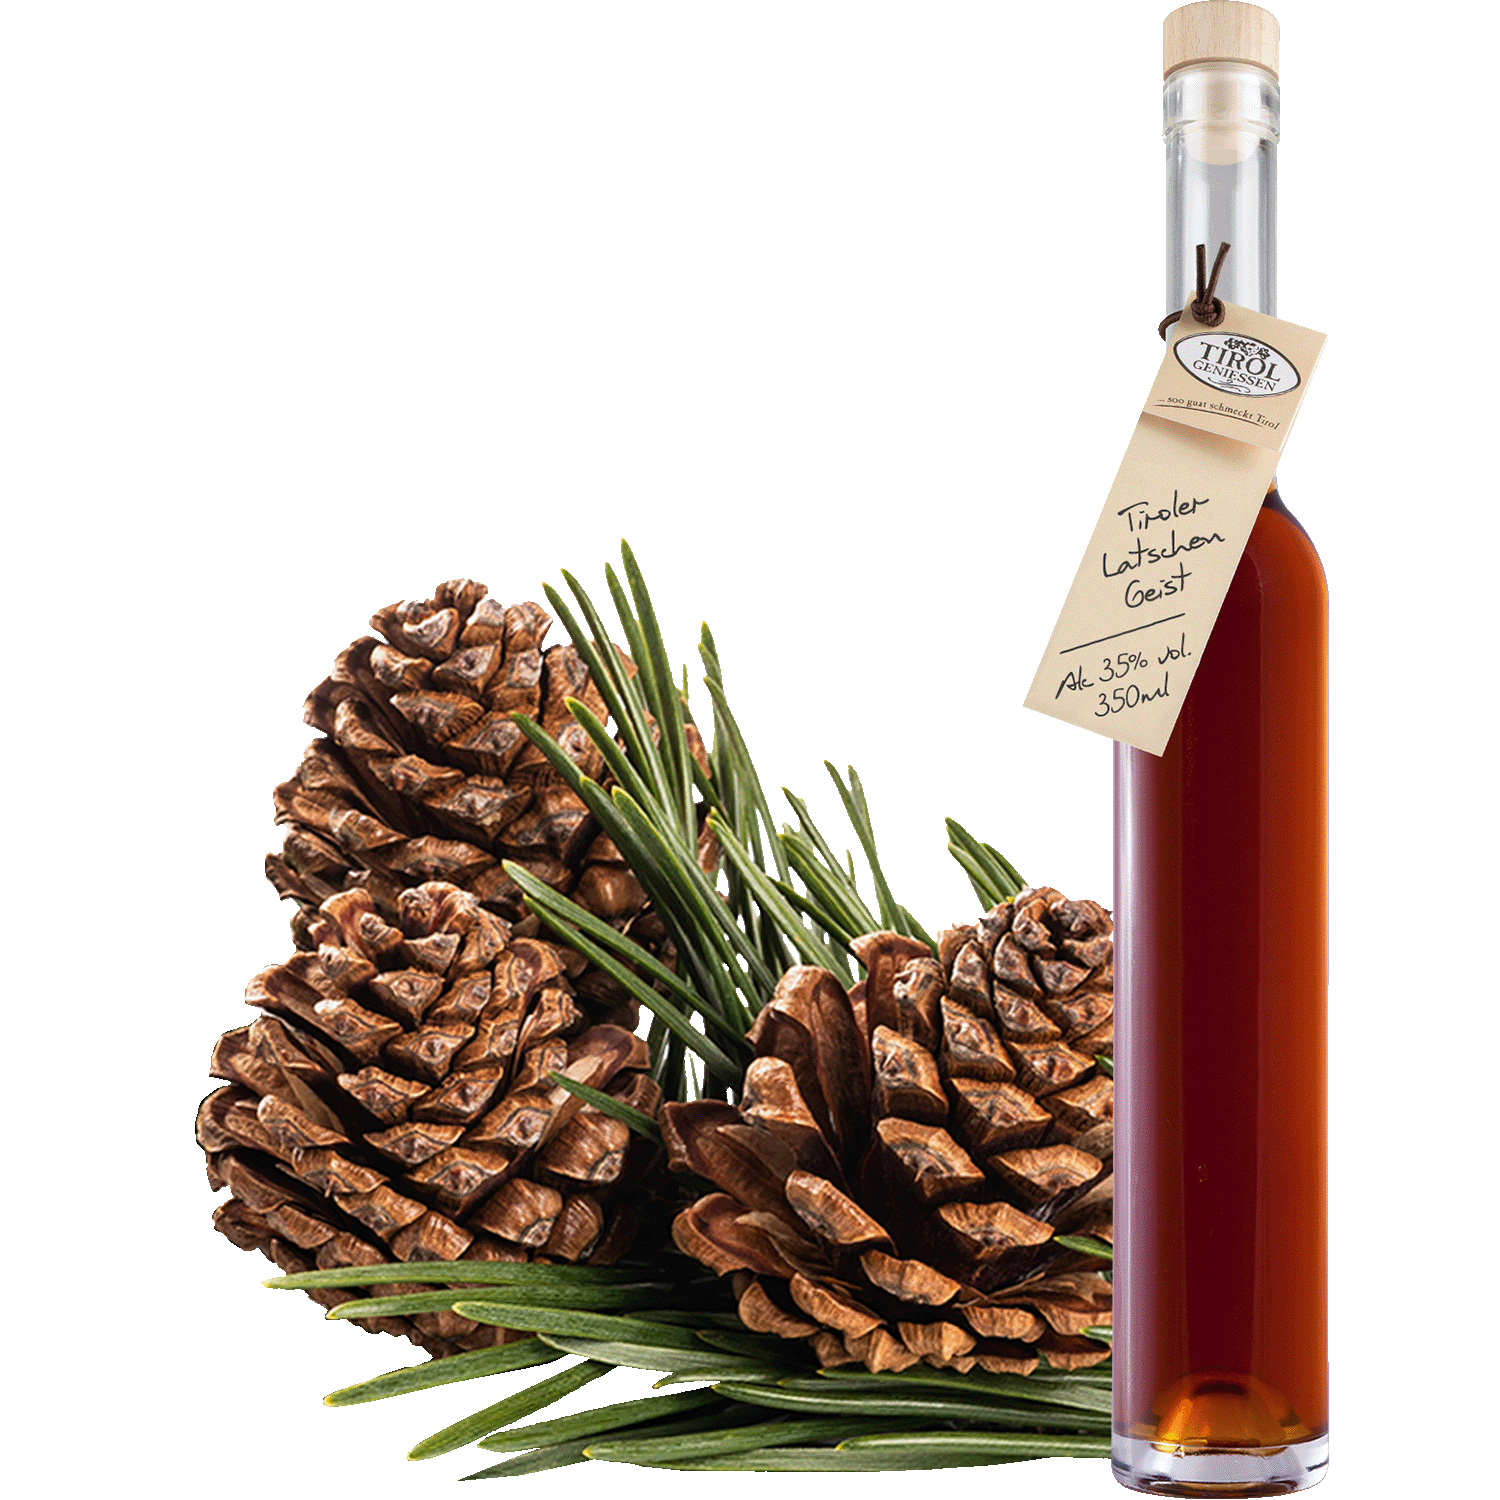 Mountain Pine Spirit in gift bottle from Austria from Tirol Geniessen